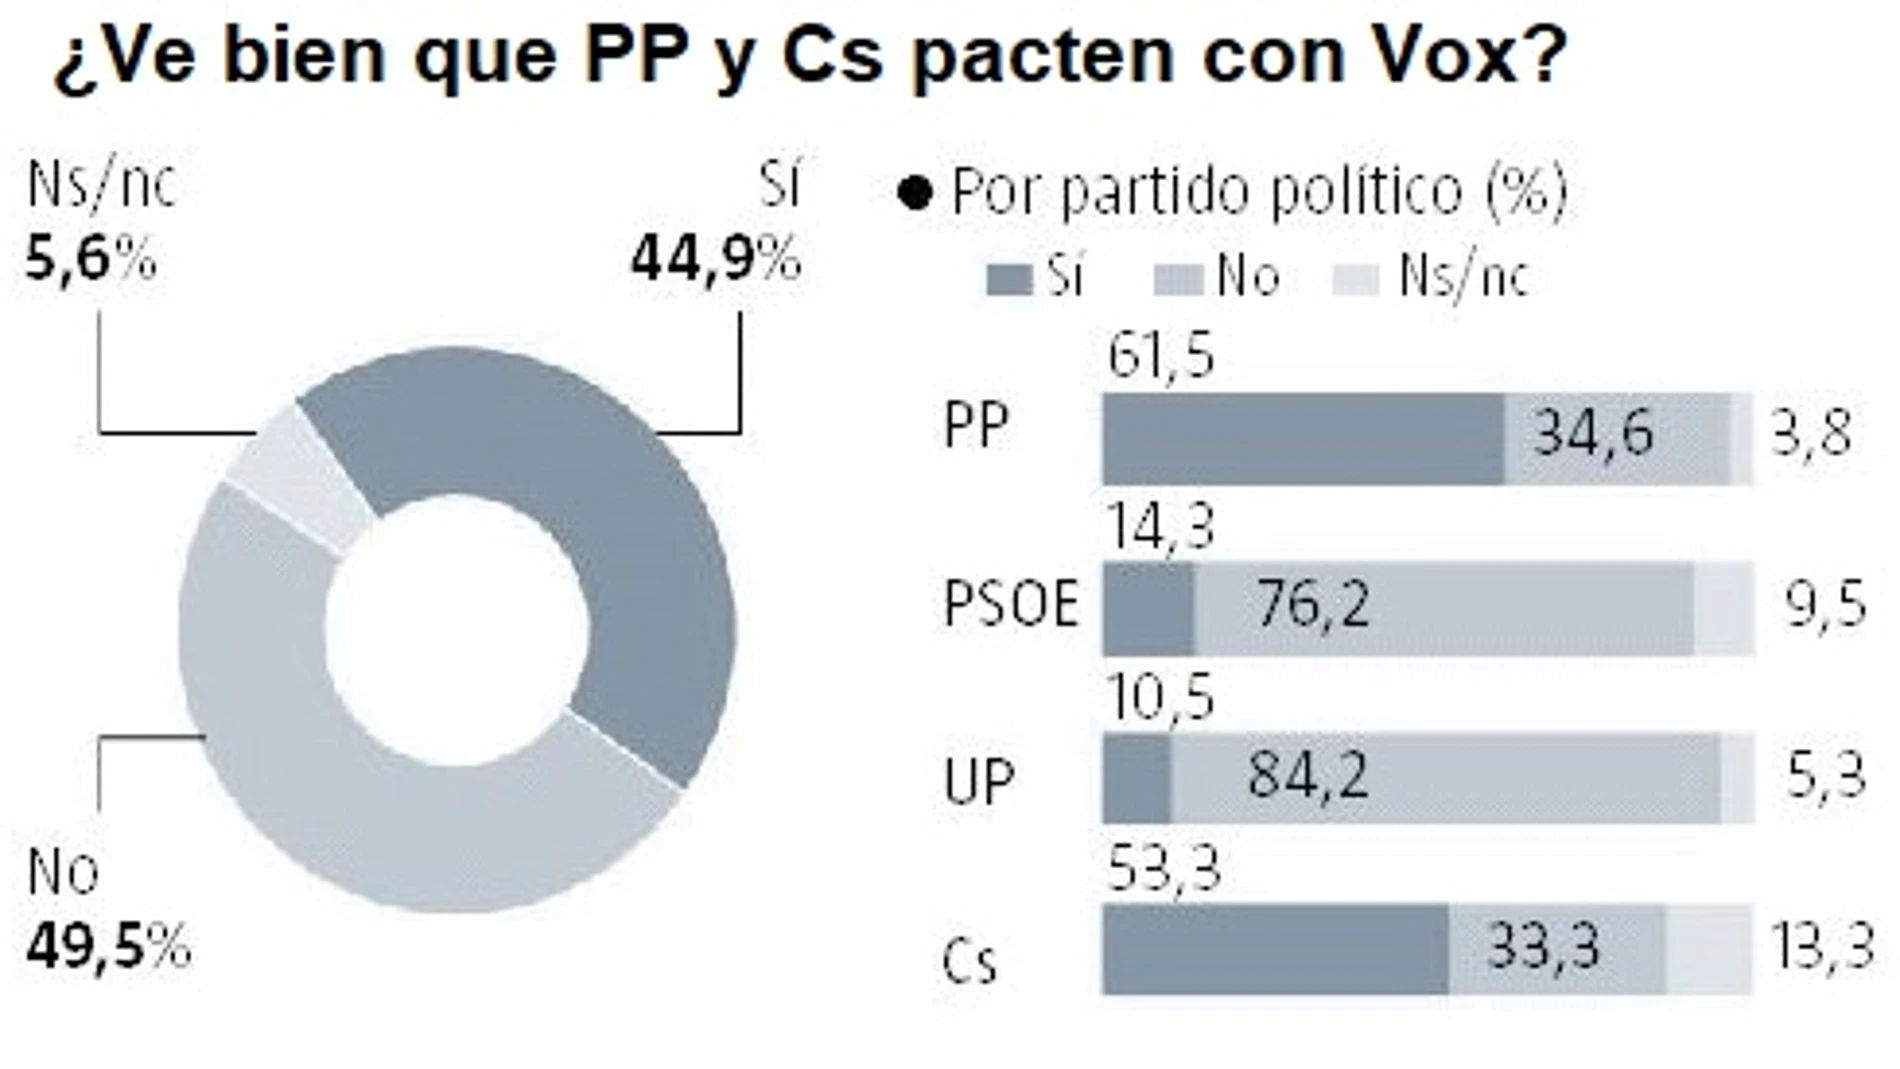 El 61,5% de los votantes del PP y el 53,3% de los de Cs, a favor de pactar con Vox